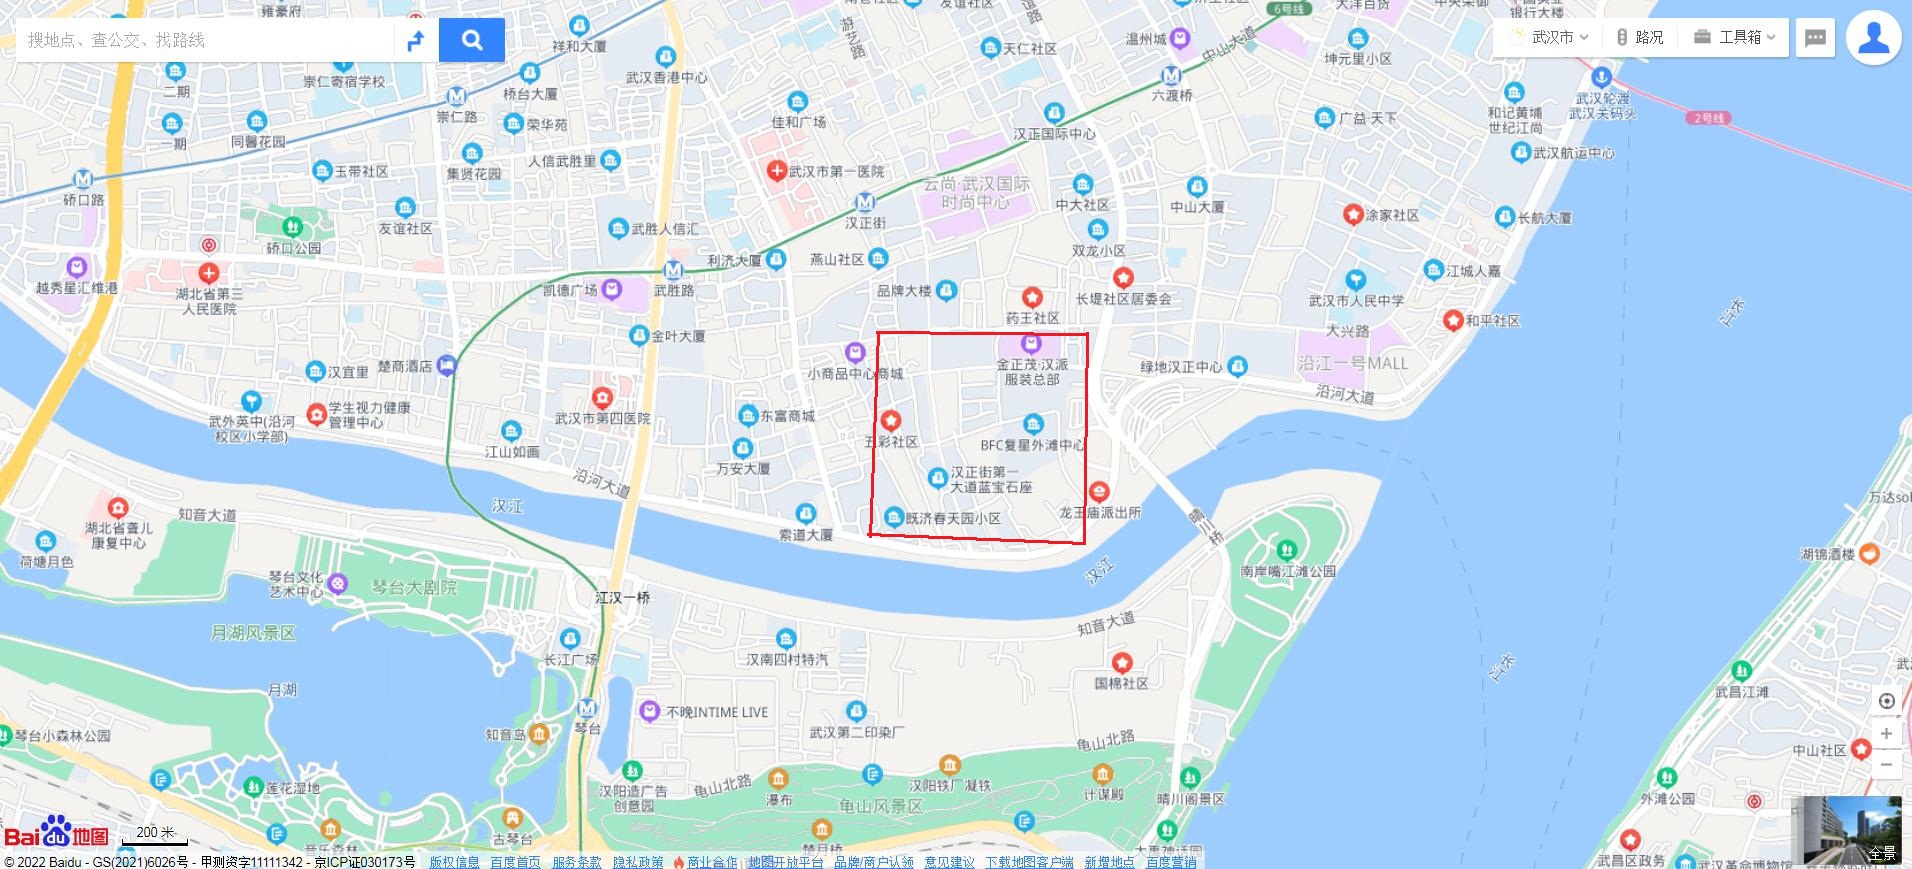 5月21日 汉口 硚口区多福路3号天桥下面抢修停水公告